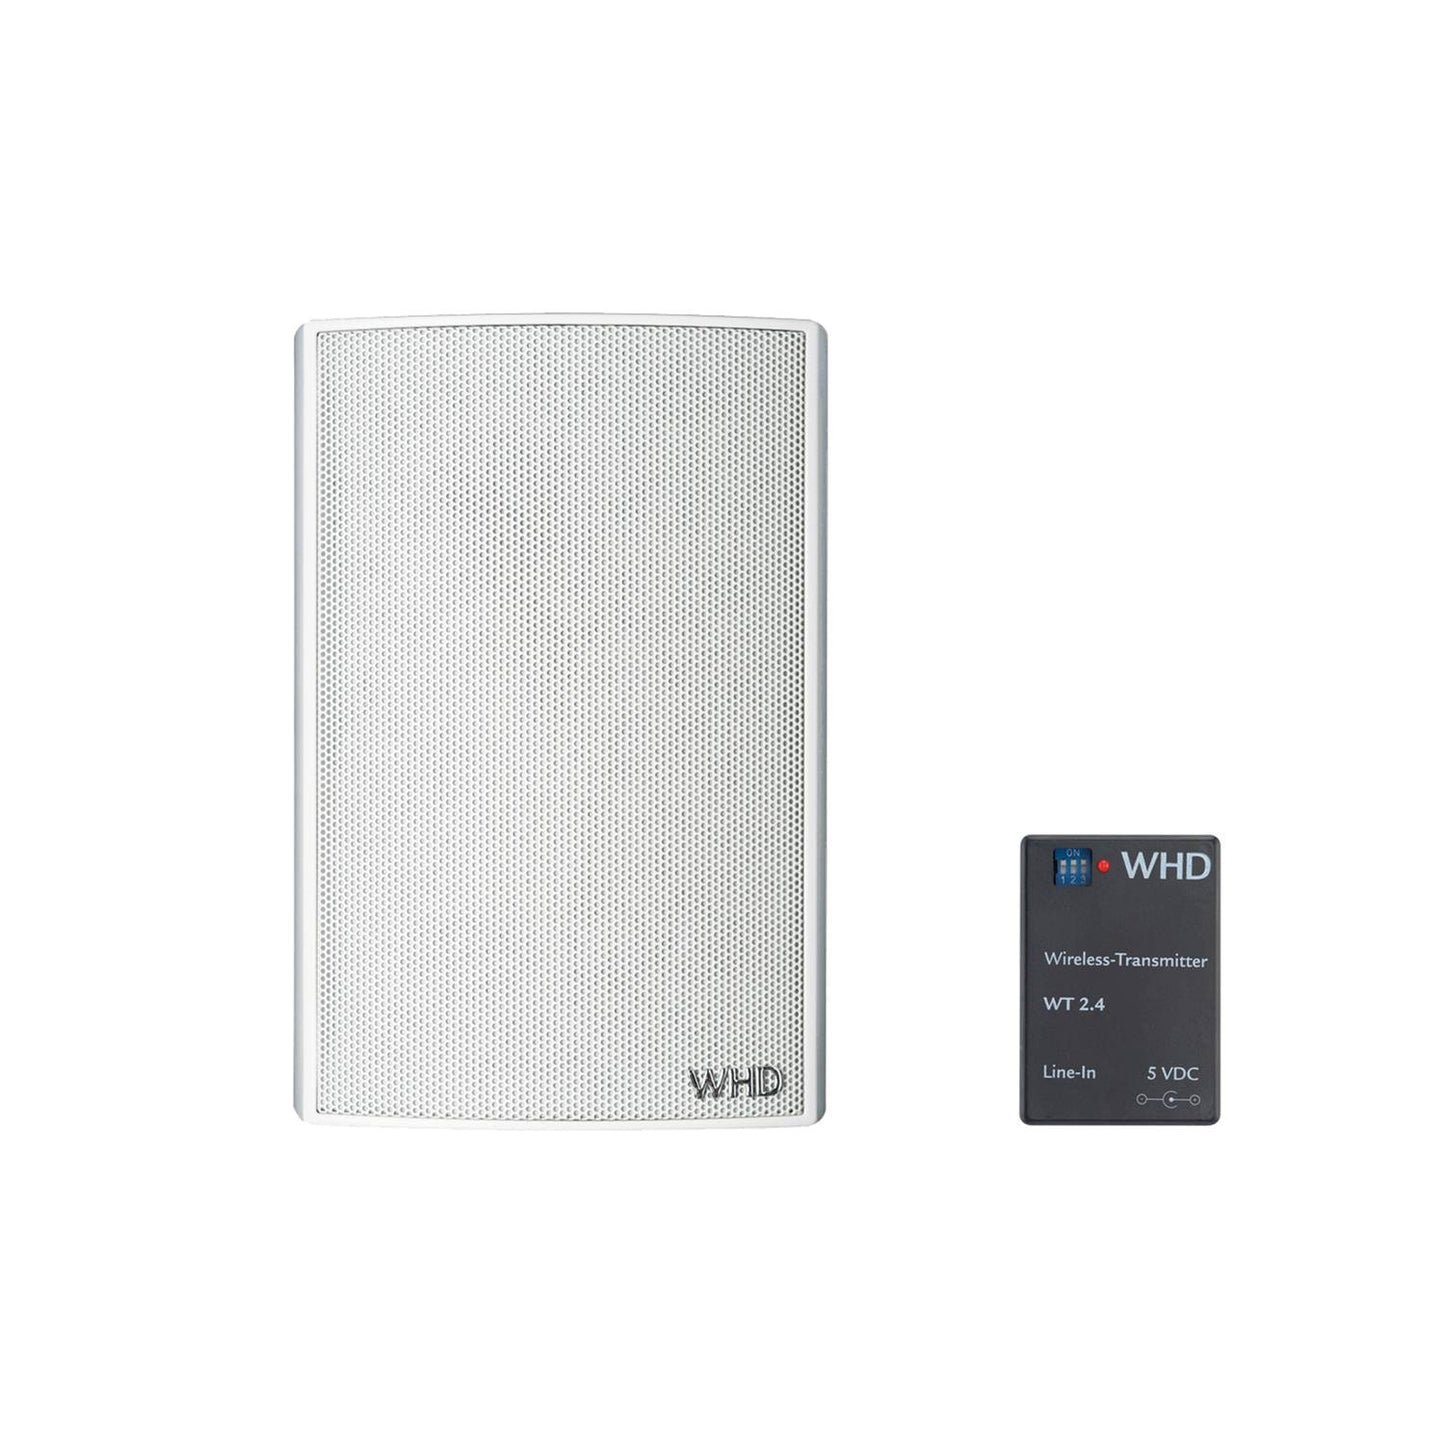 WHD Mini 4 Wireless - Enceinte hi-fi haute qualité blanc/noir